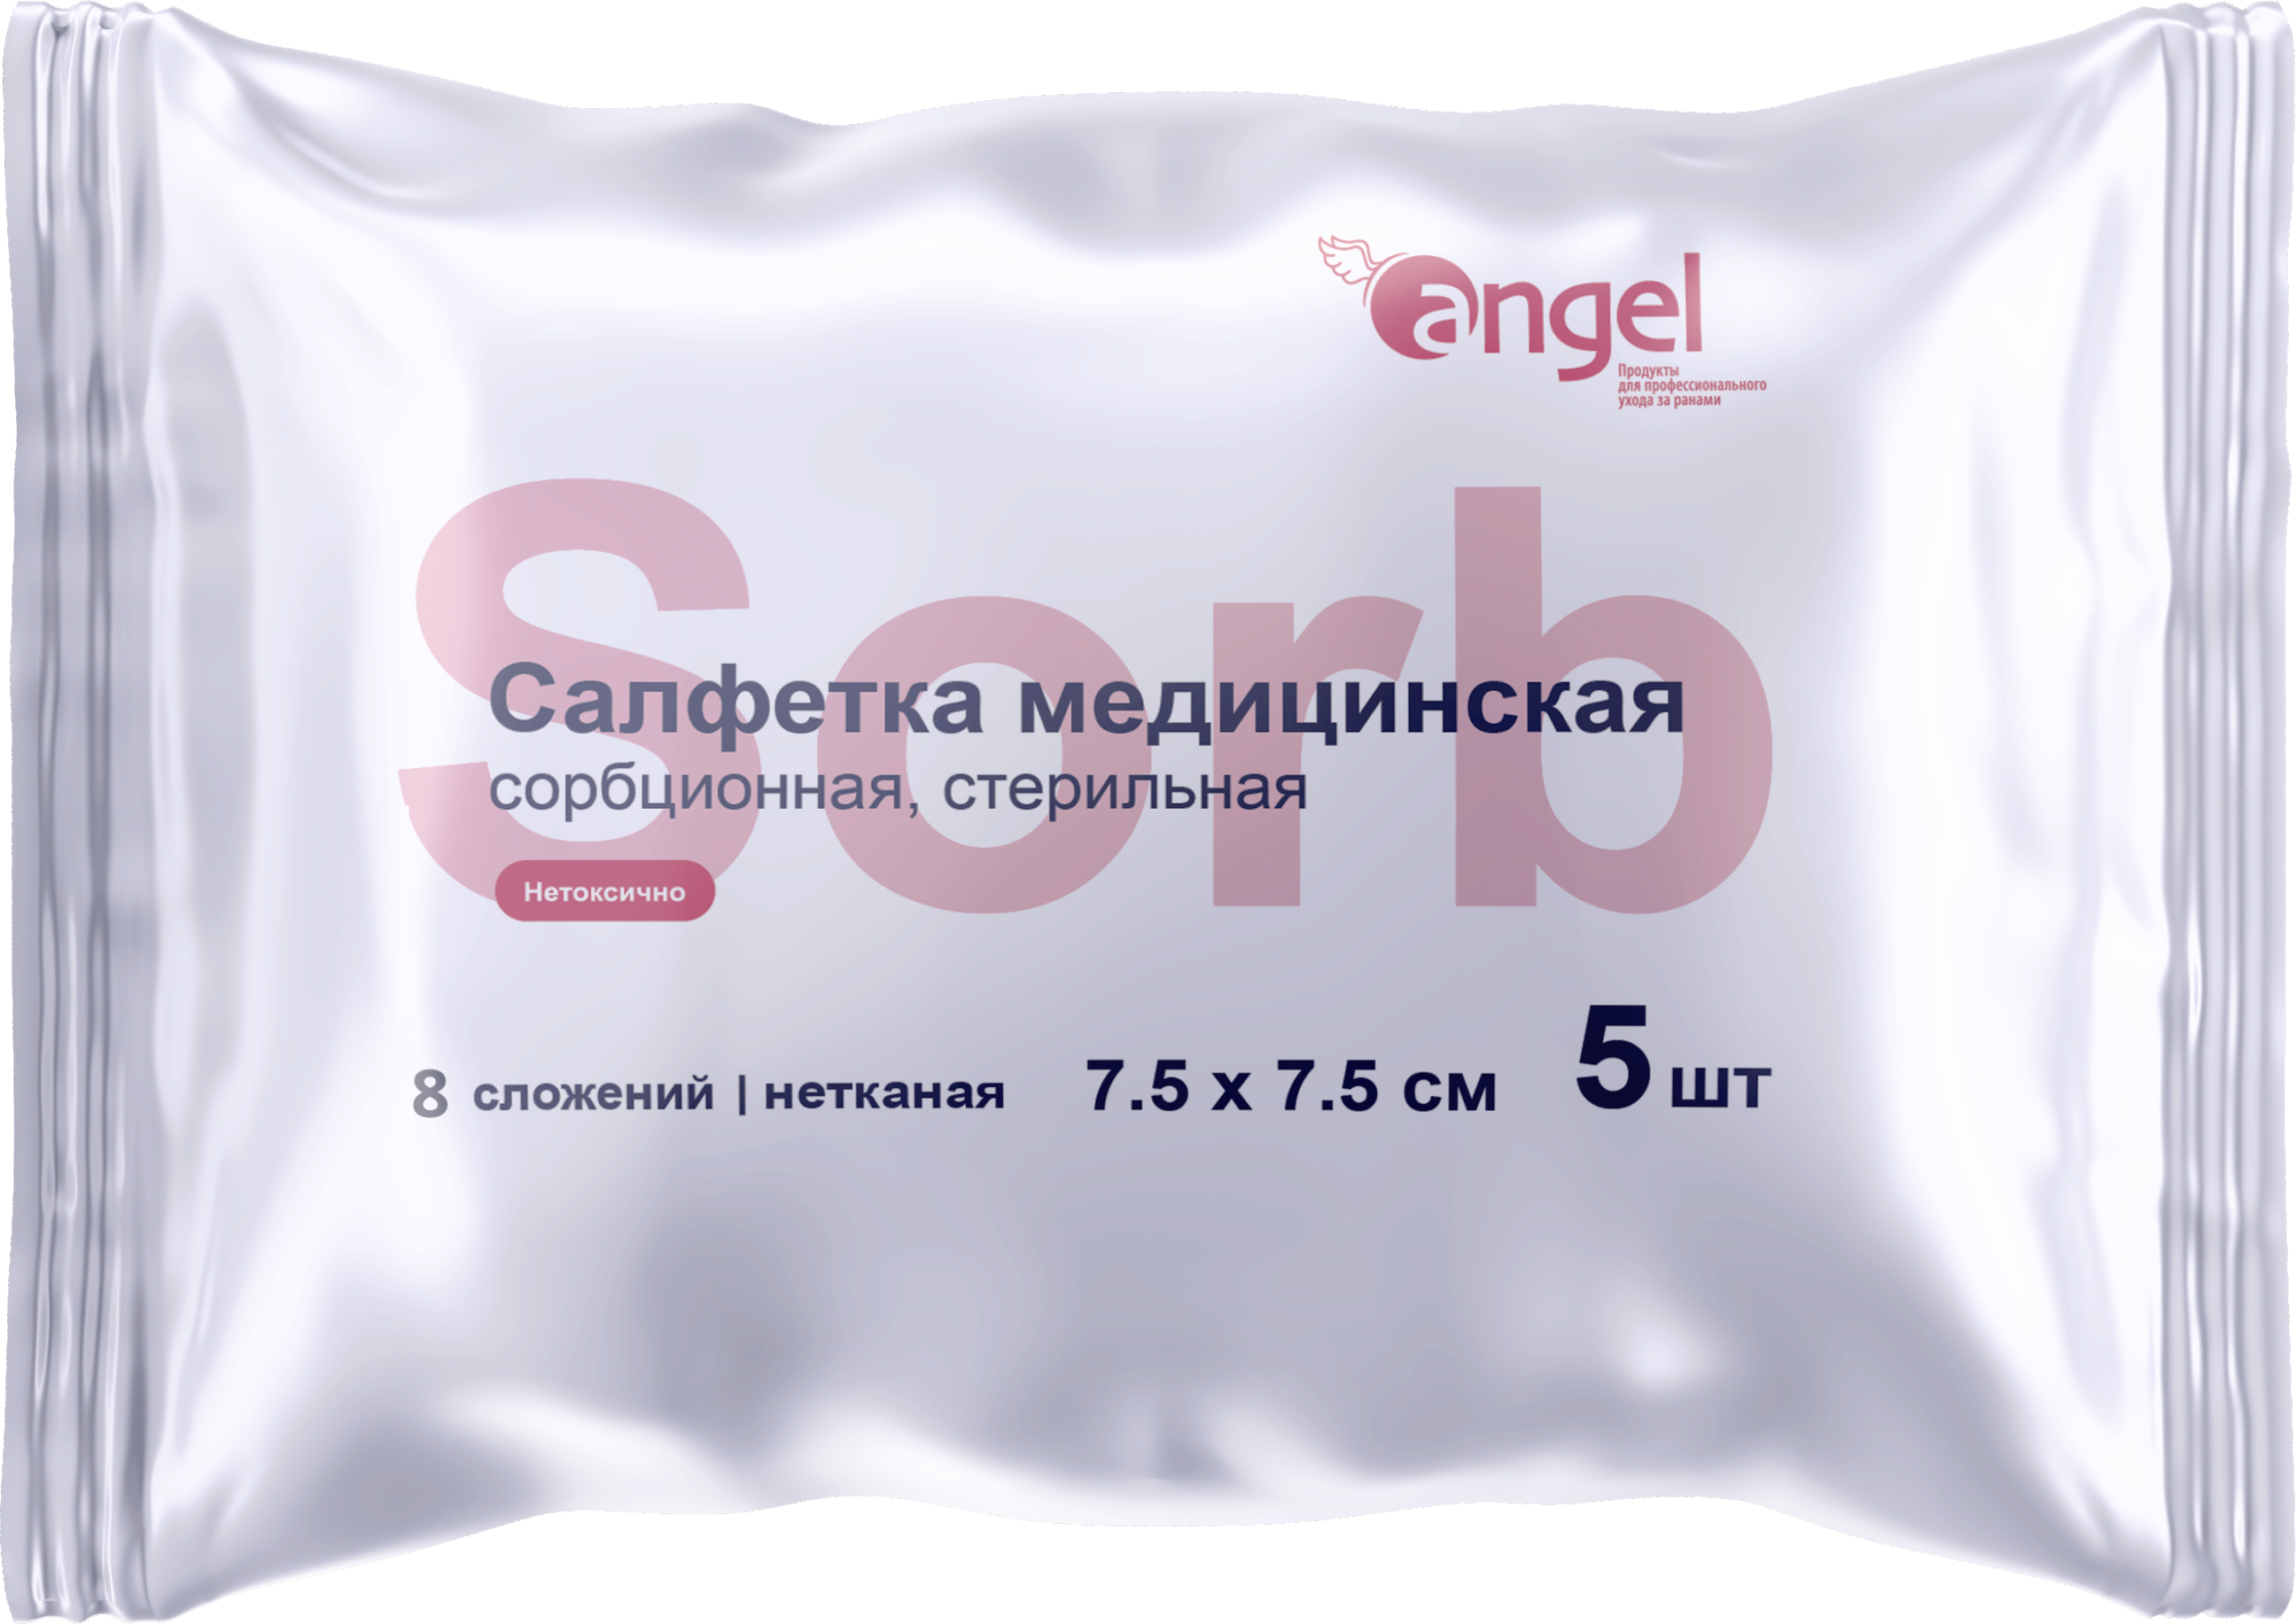 Angel / Ангел - салфетки сорбционные, нетканые, стерильные, 8 сл., 7,5x7,5 см, 5 шт. (10 шт.)